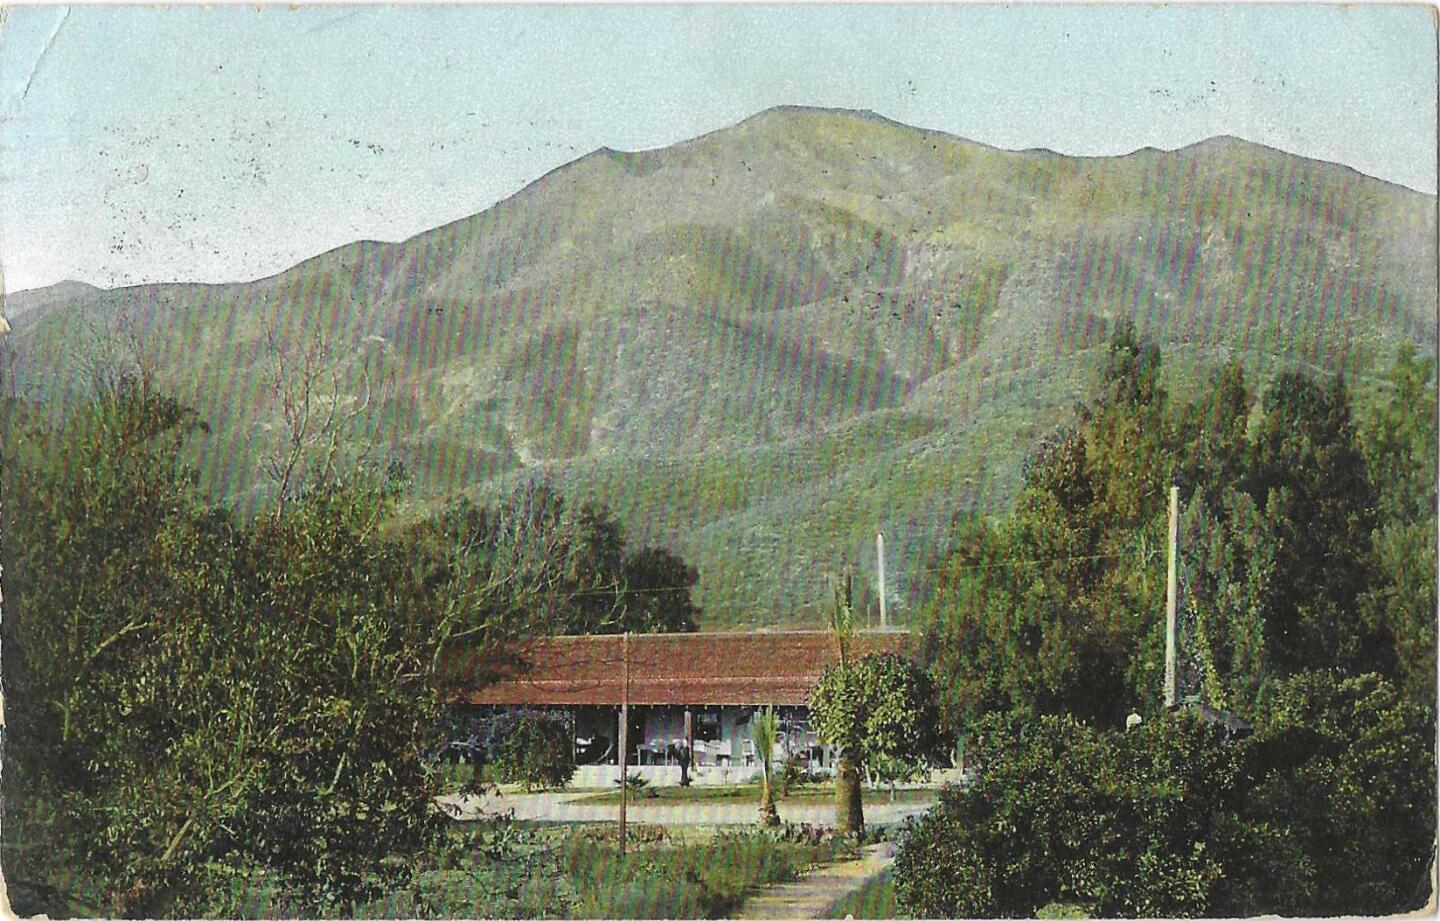 A postcard shows Casa Verdugo with a mountain backdrop